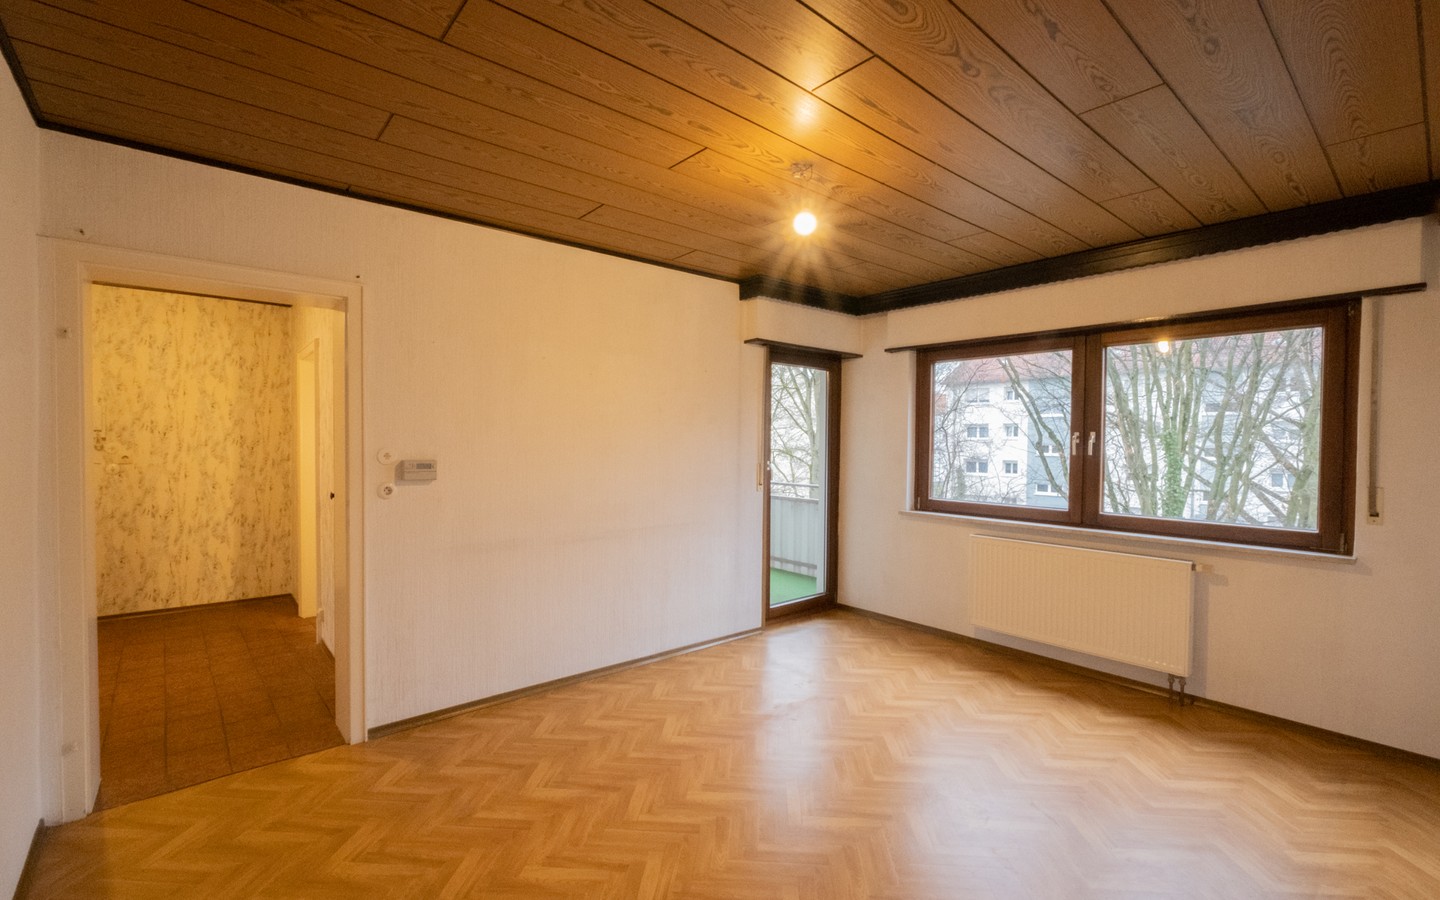 Wohnzimmer - Bezugsfreie 2-Zimmer-Wohnung mit Loggia und Garage in Leimen